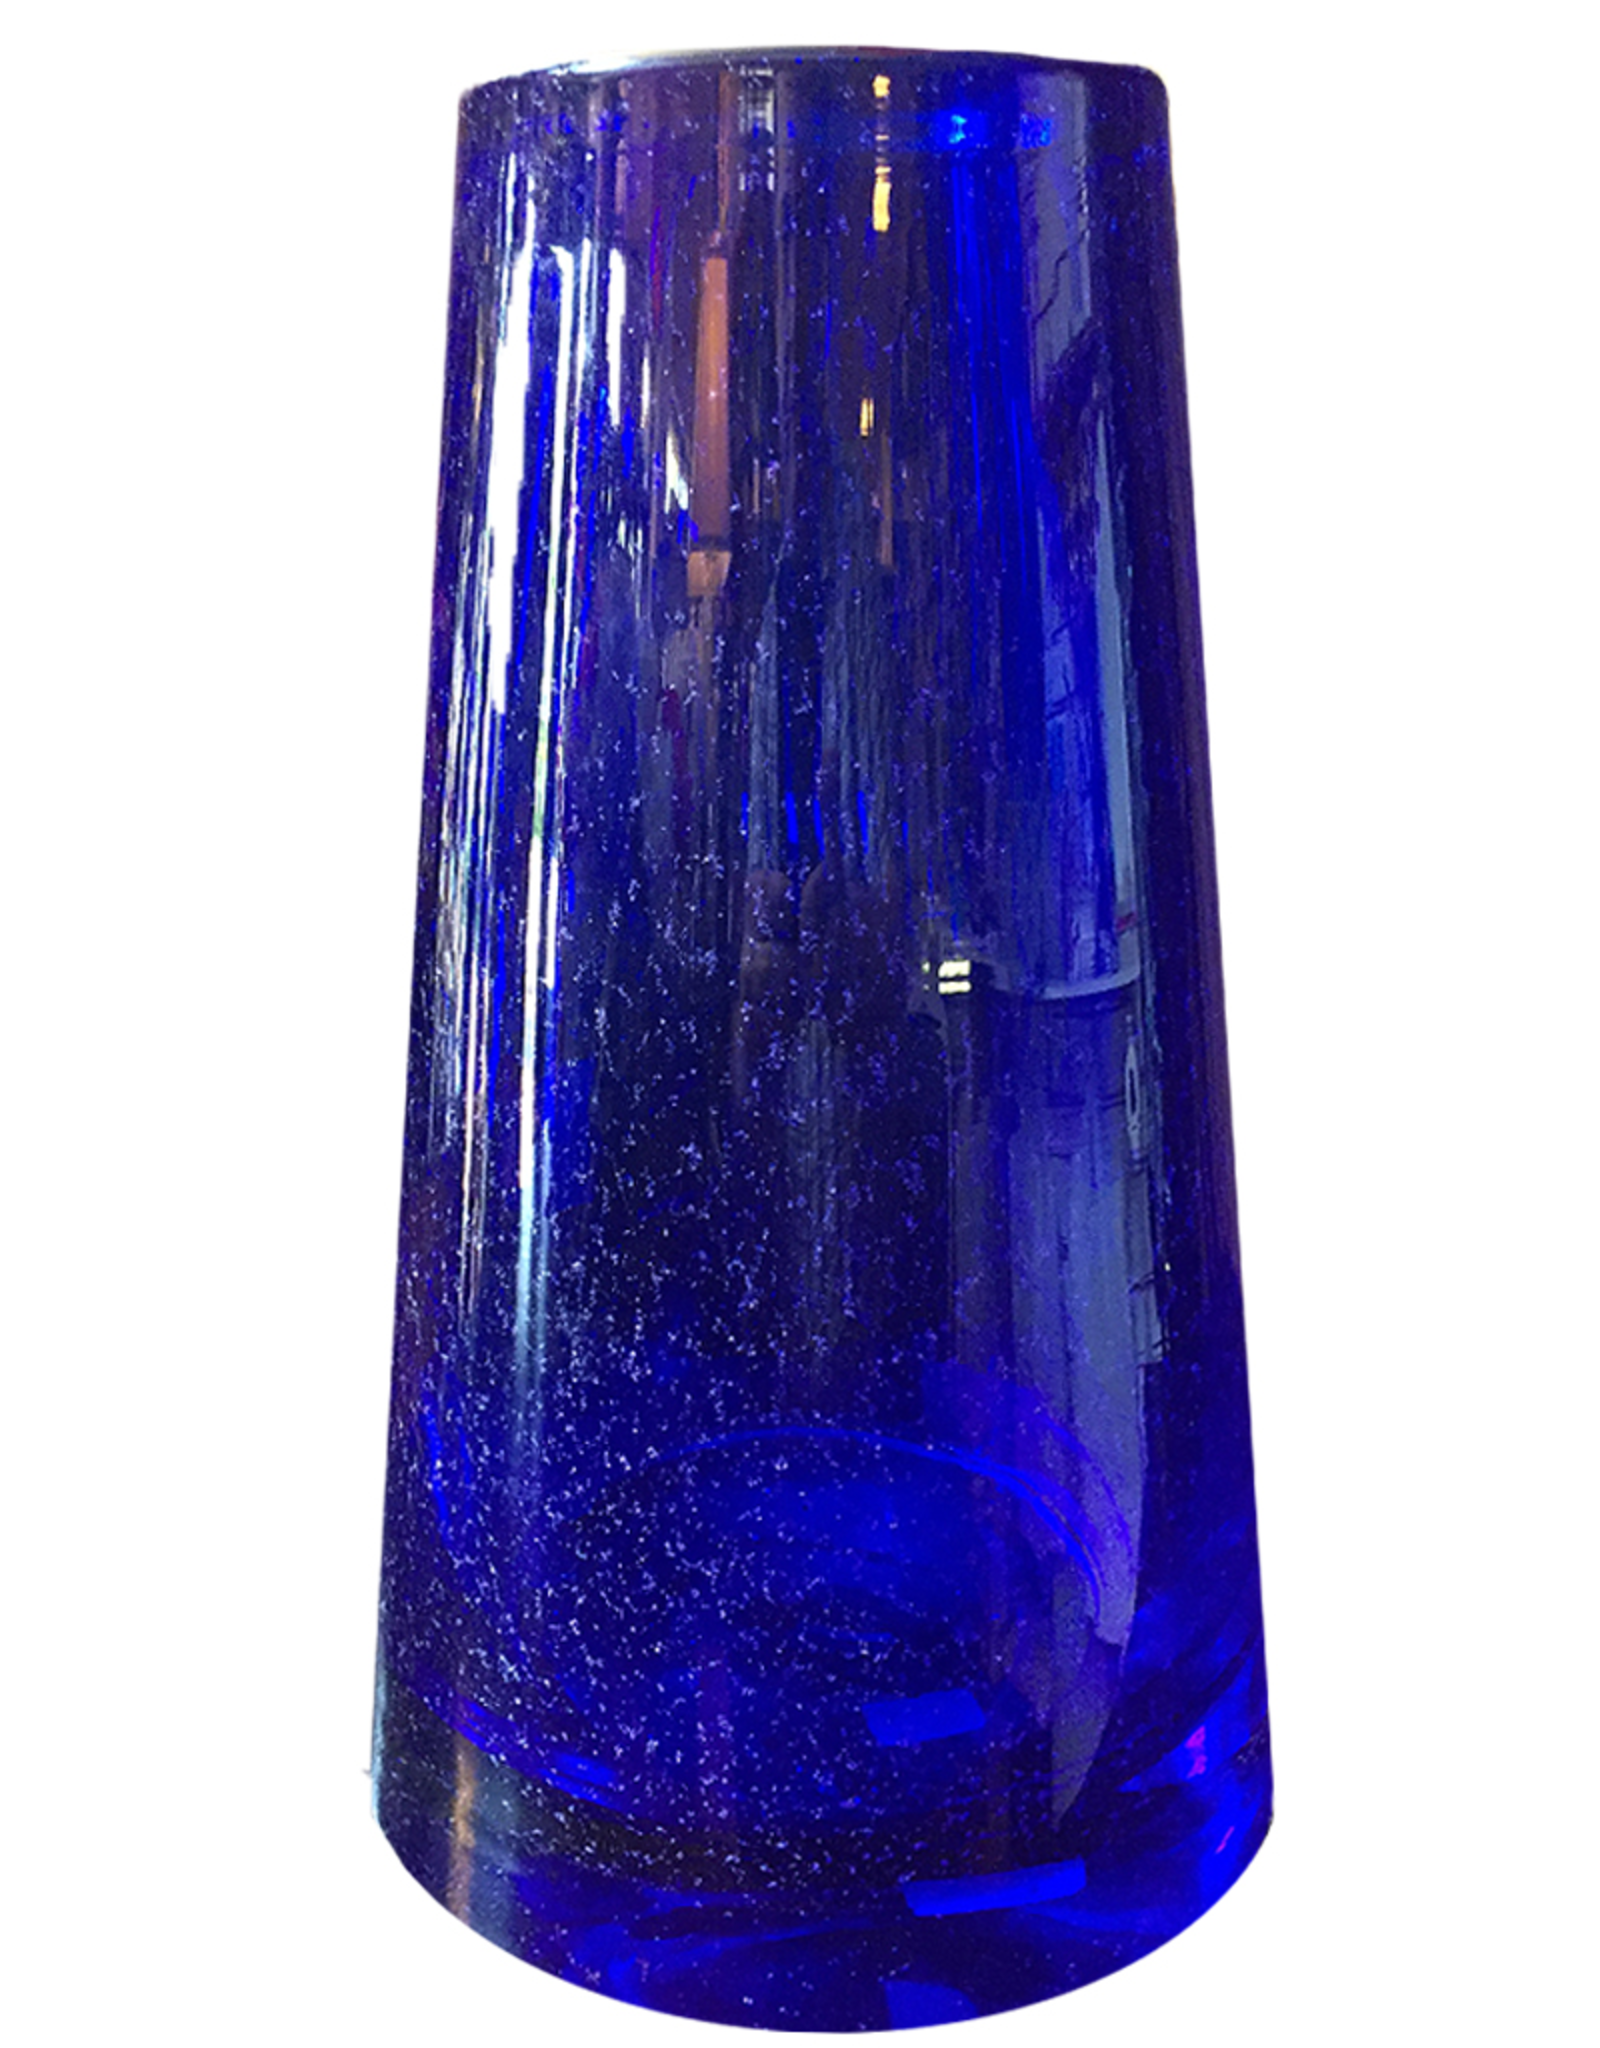 Volcano Cobalt Blue Czech Art Glass Vase 12H